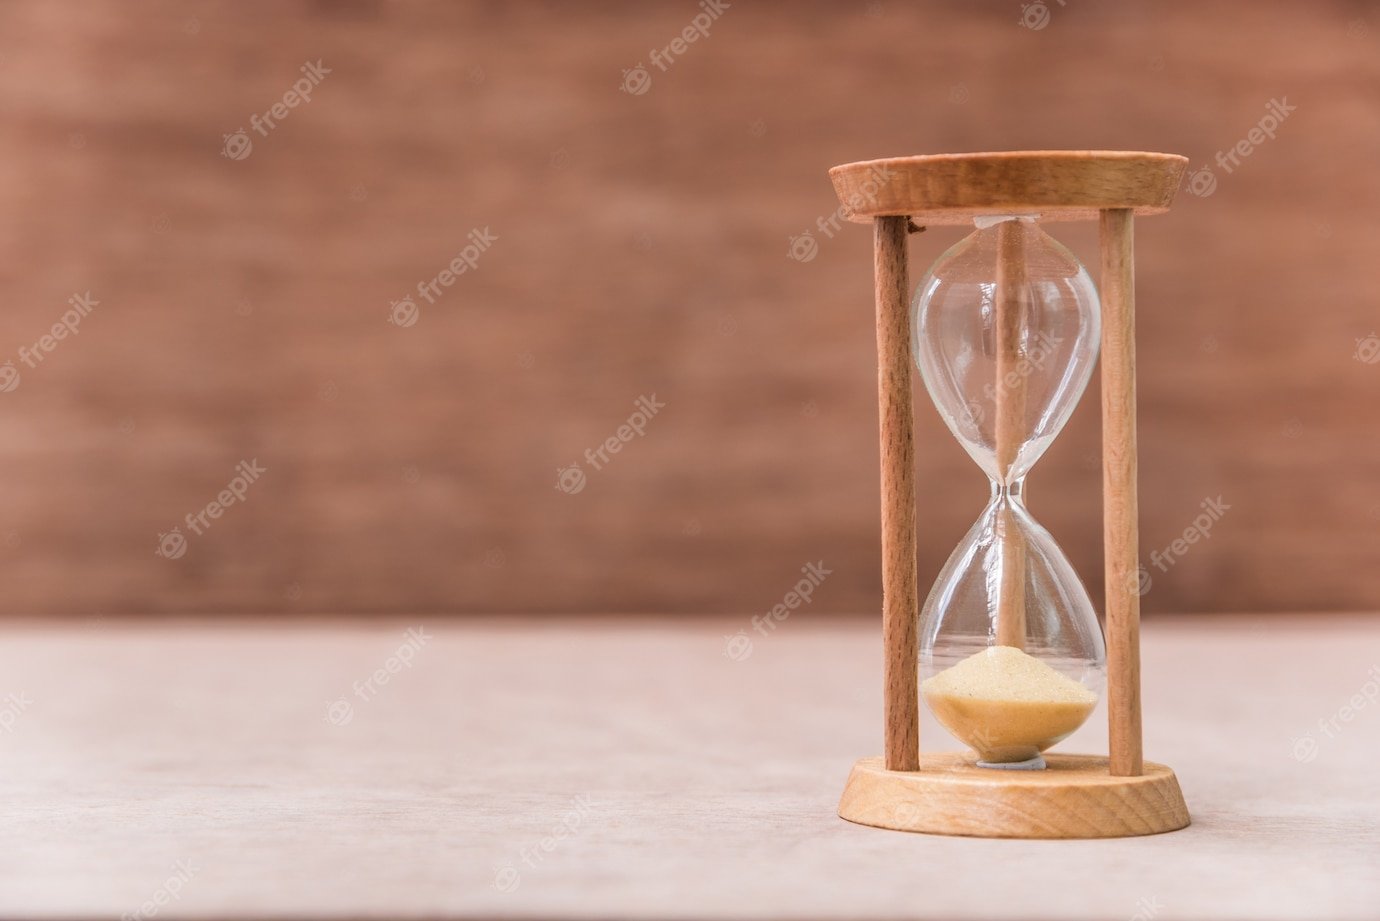 Песочные часы кратко. Песочные часы. Песочные часы в деревянном корпусе. Старинные песочные часы. Песочные часы истекают.